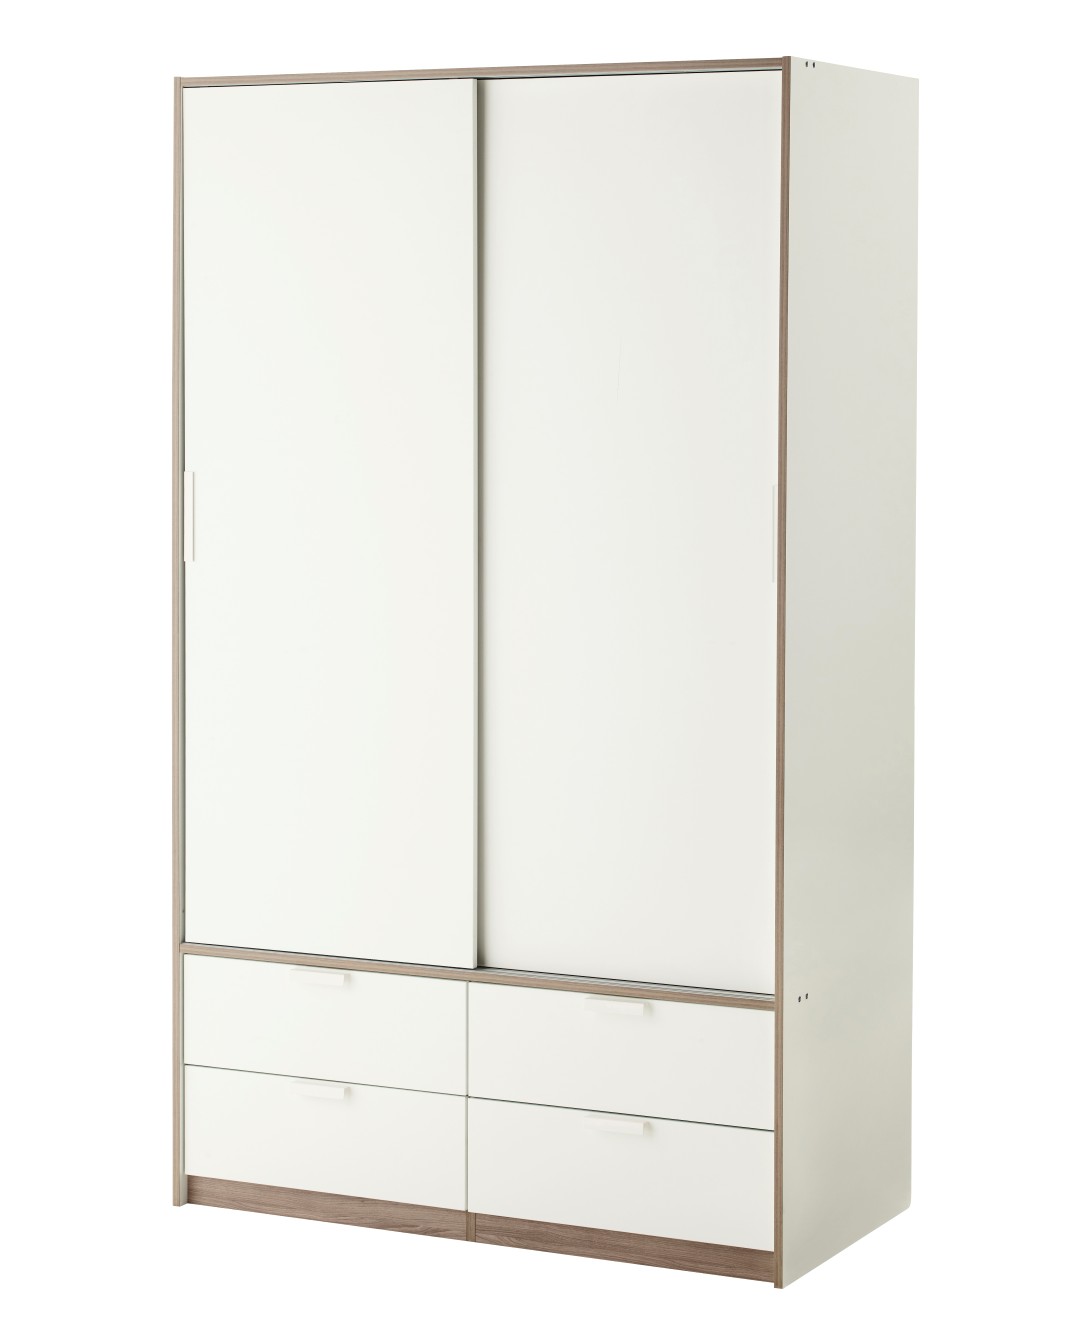 Ikea Trysil шкаф